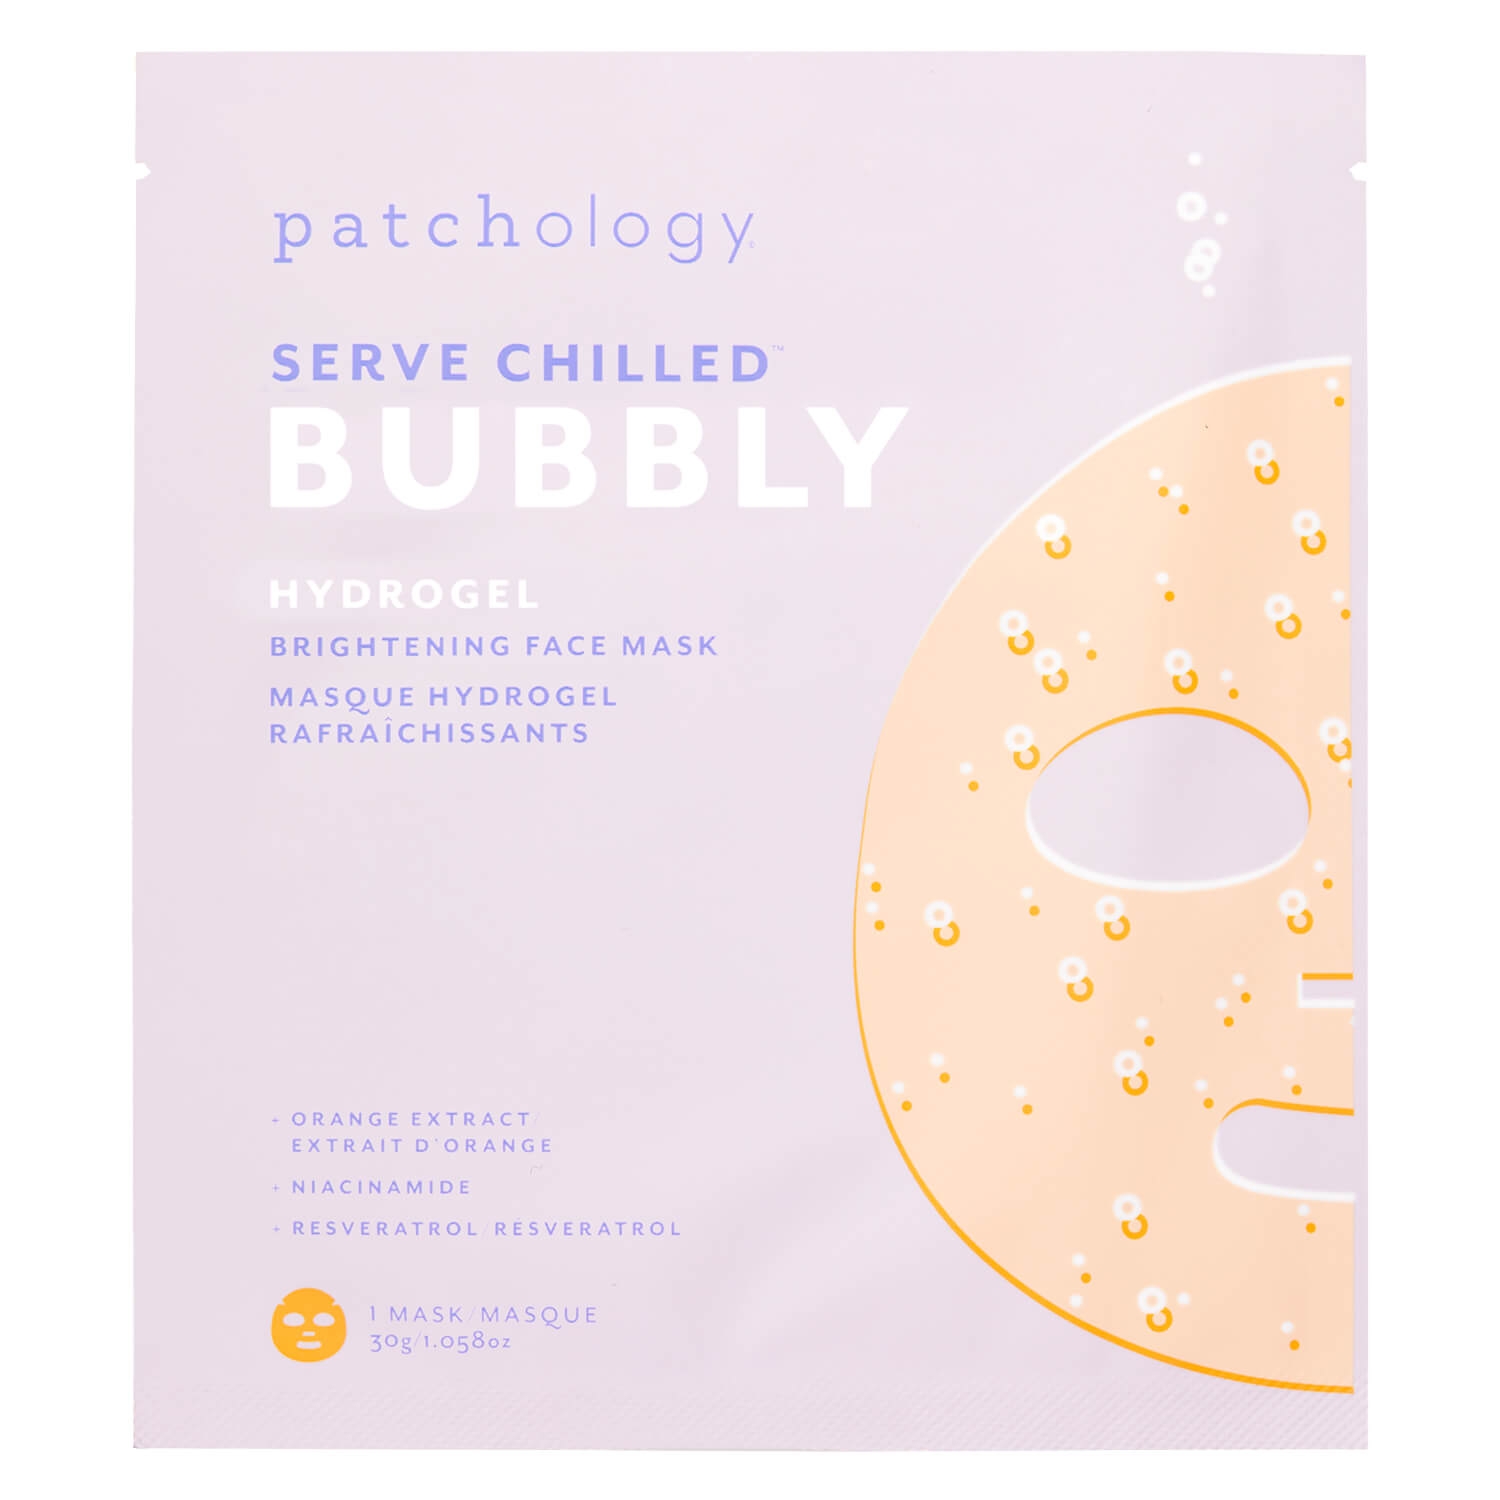 Produktbild von Serve Chilled Bubbly Hydrogel Mask